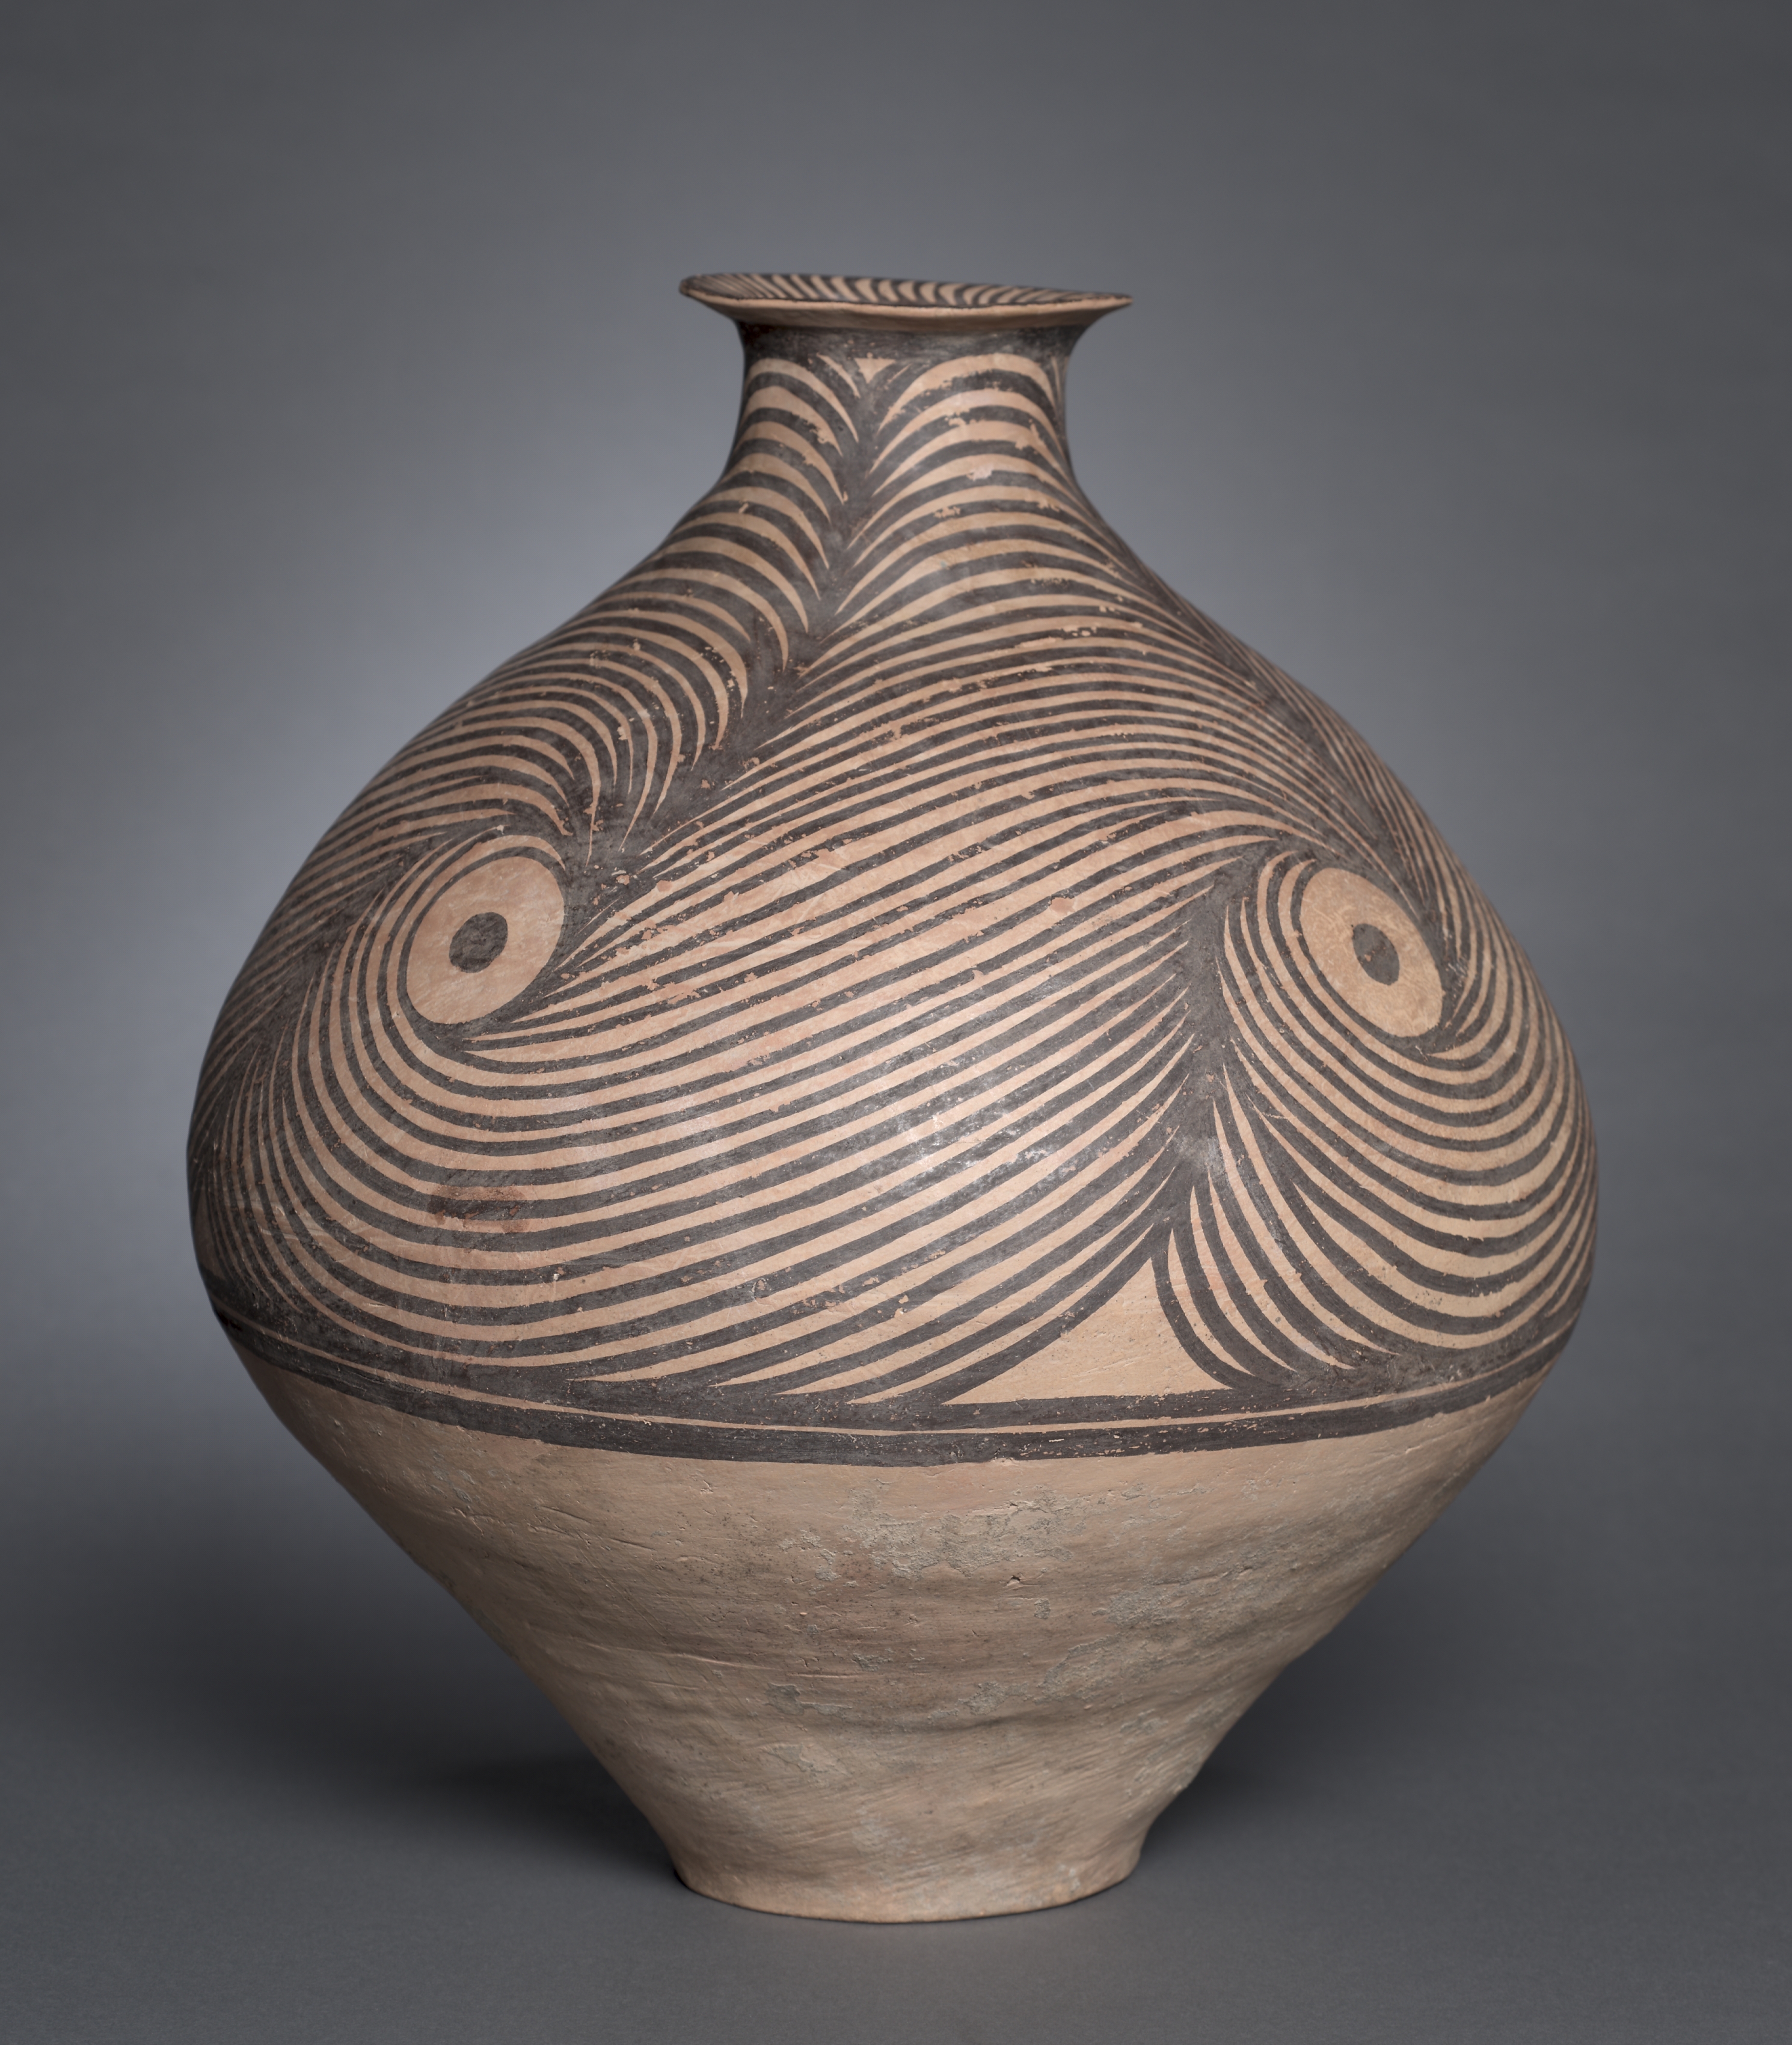 Jar with Spiral Designs